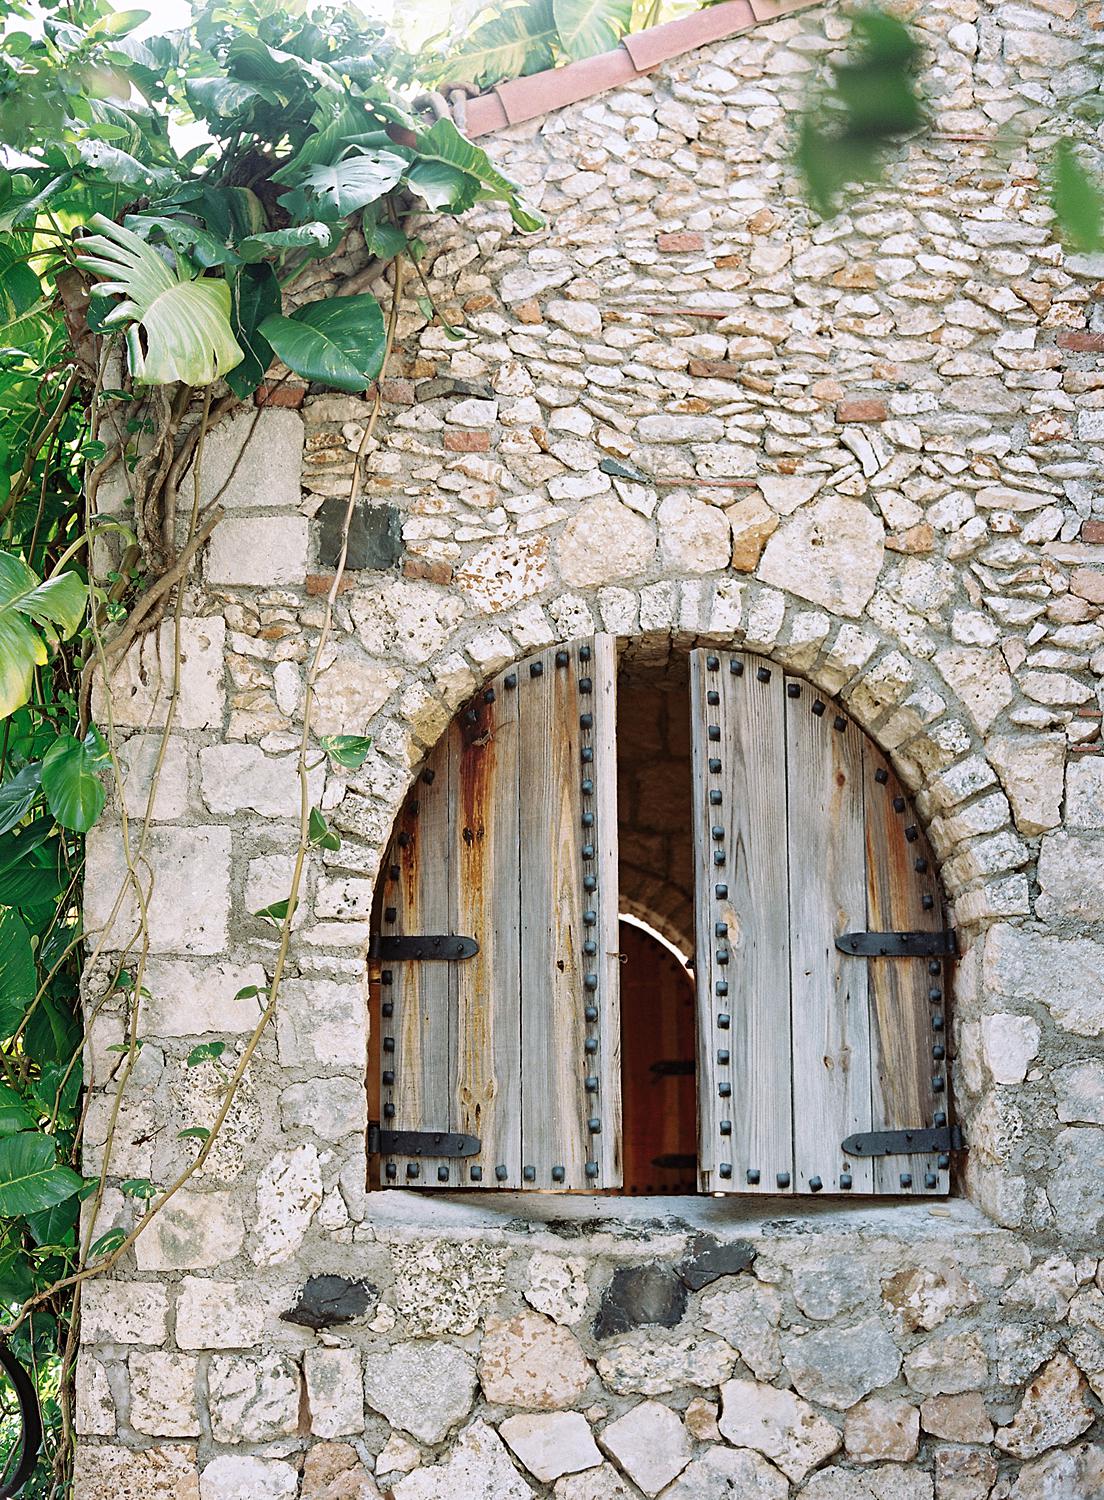 Wooden window doors in rock wall